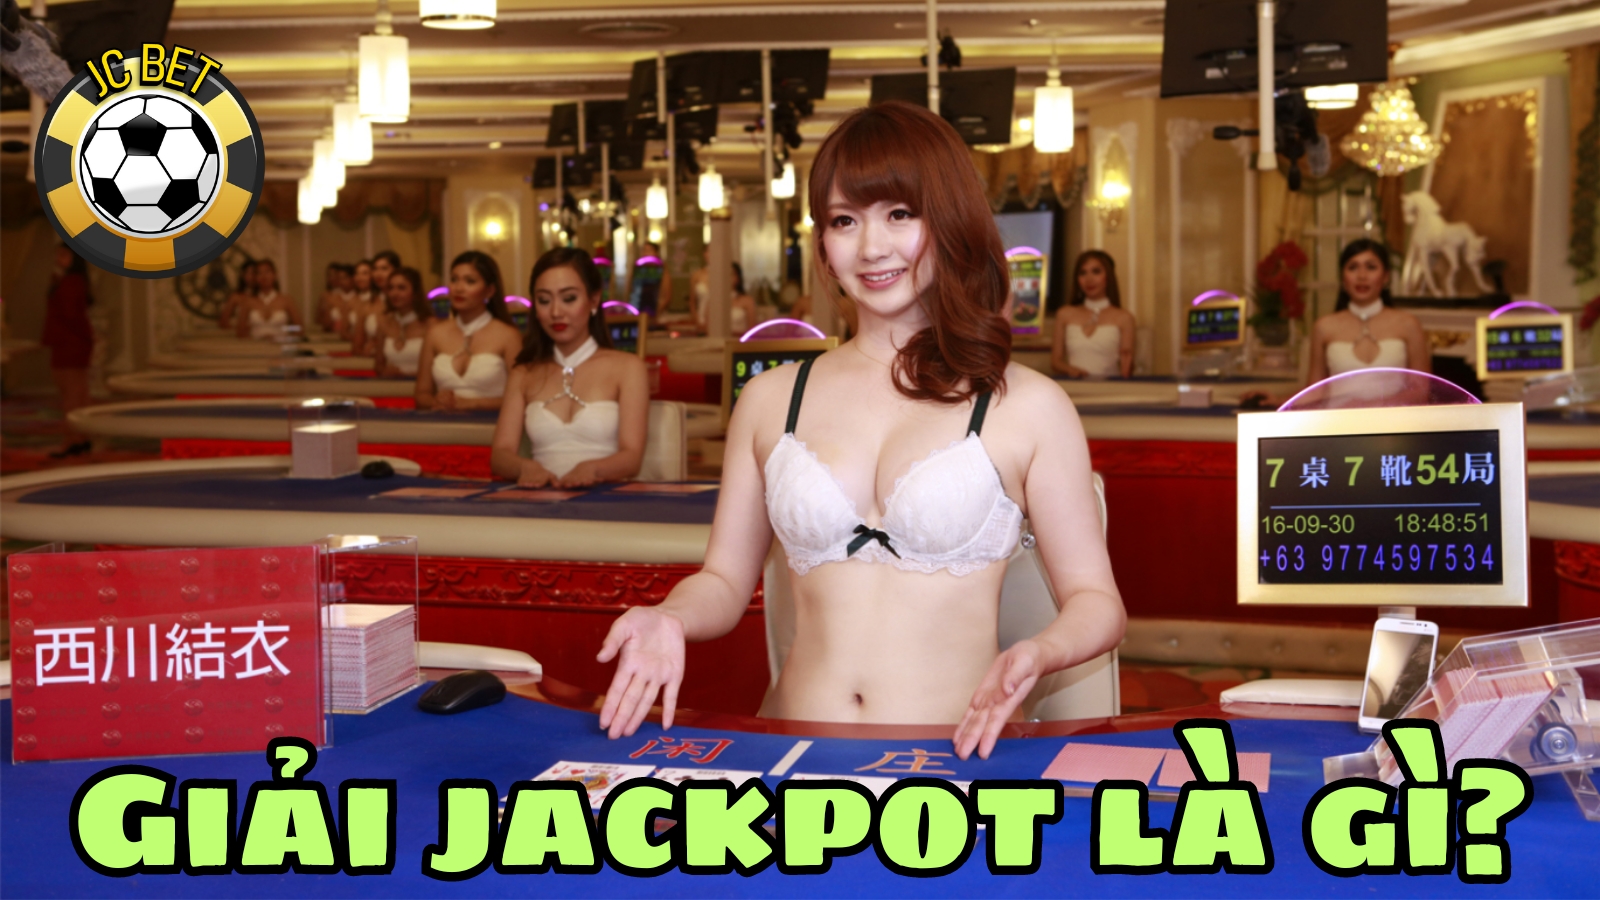 Giải jackpot là gì? Cách chơi bài jackpot thắng tiền nhà cái như thế nào?